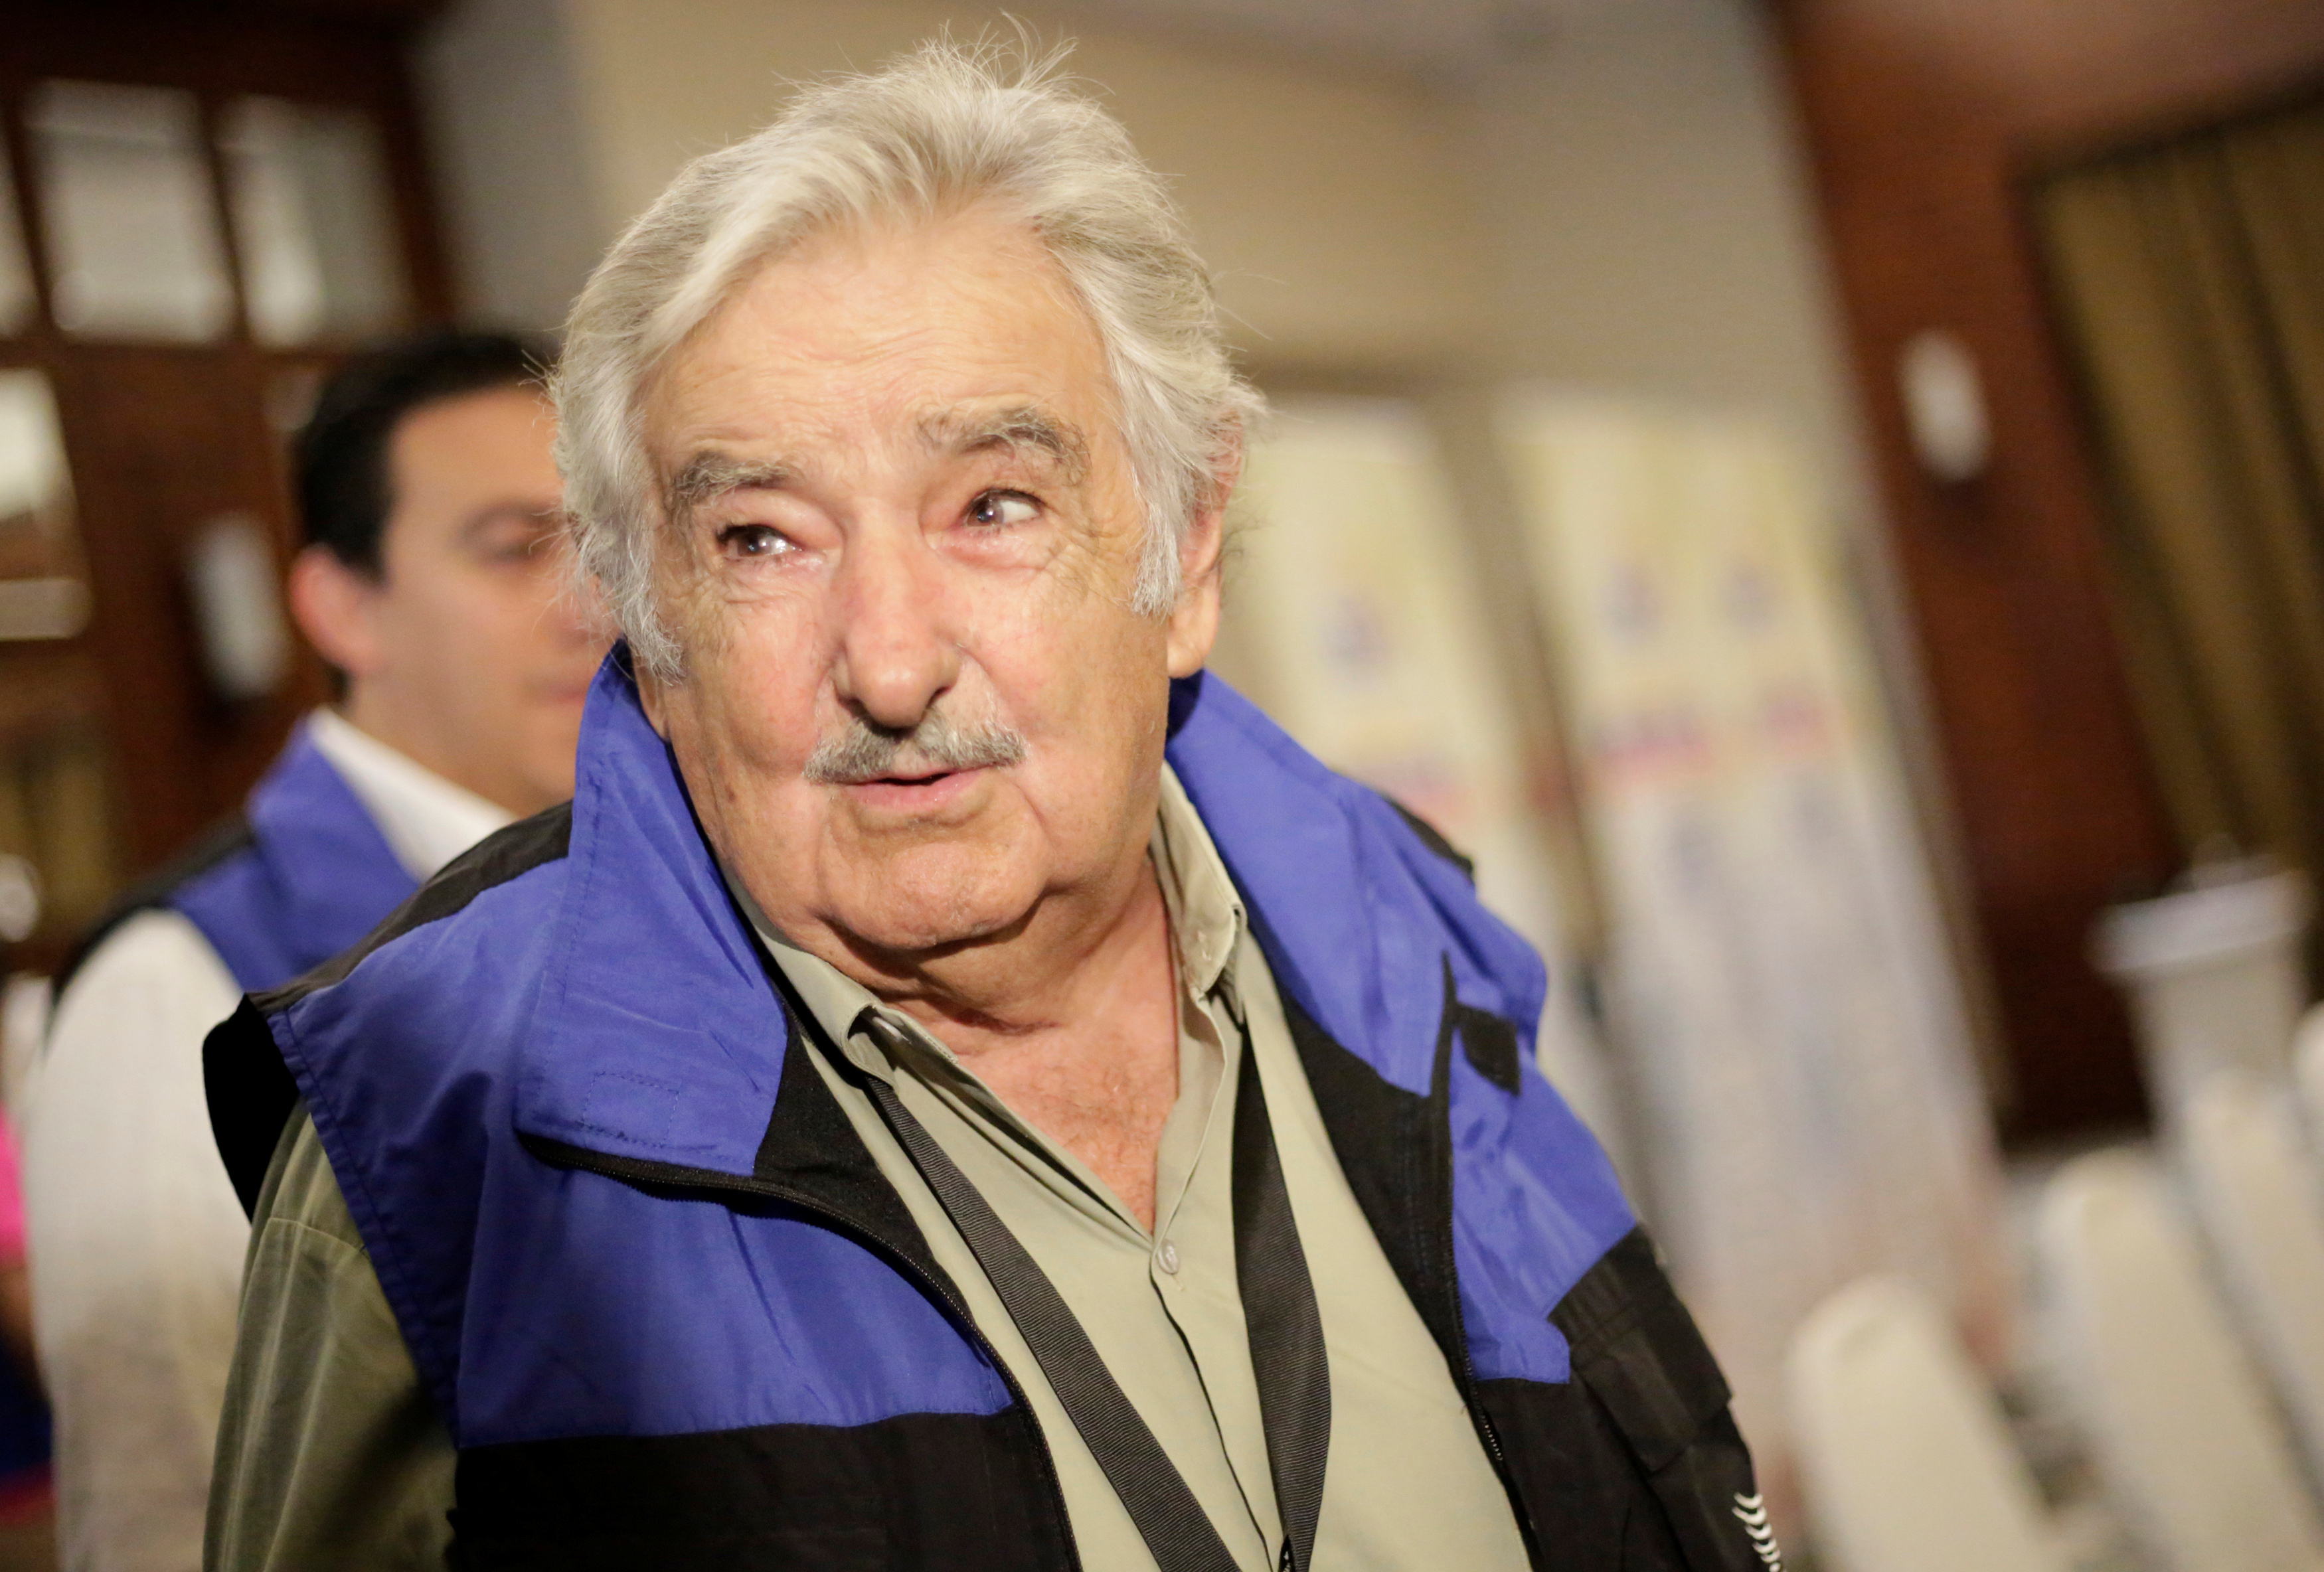 El recadito que Pepe Mujica le dejó a Trump ante pacto de UE y Mercosur